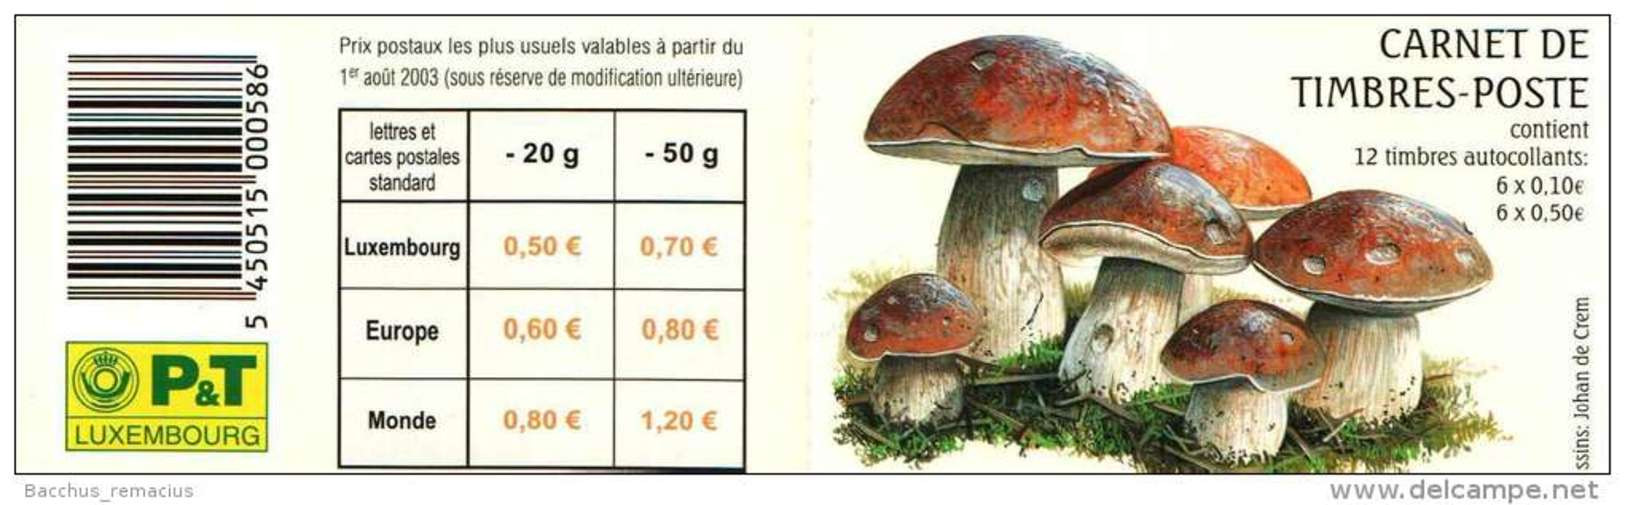 Luxembourg Carnet De Timbres-Poste Autocollants (6x0,50 Et 6x0,10 Euro) Champignons Pilze Mushrooms 2004 - Carnets